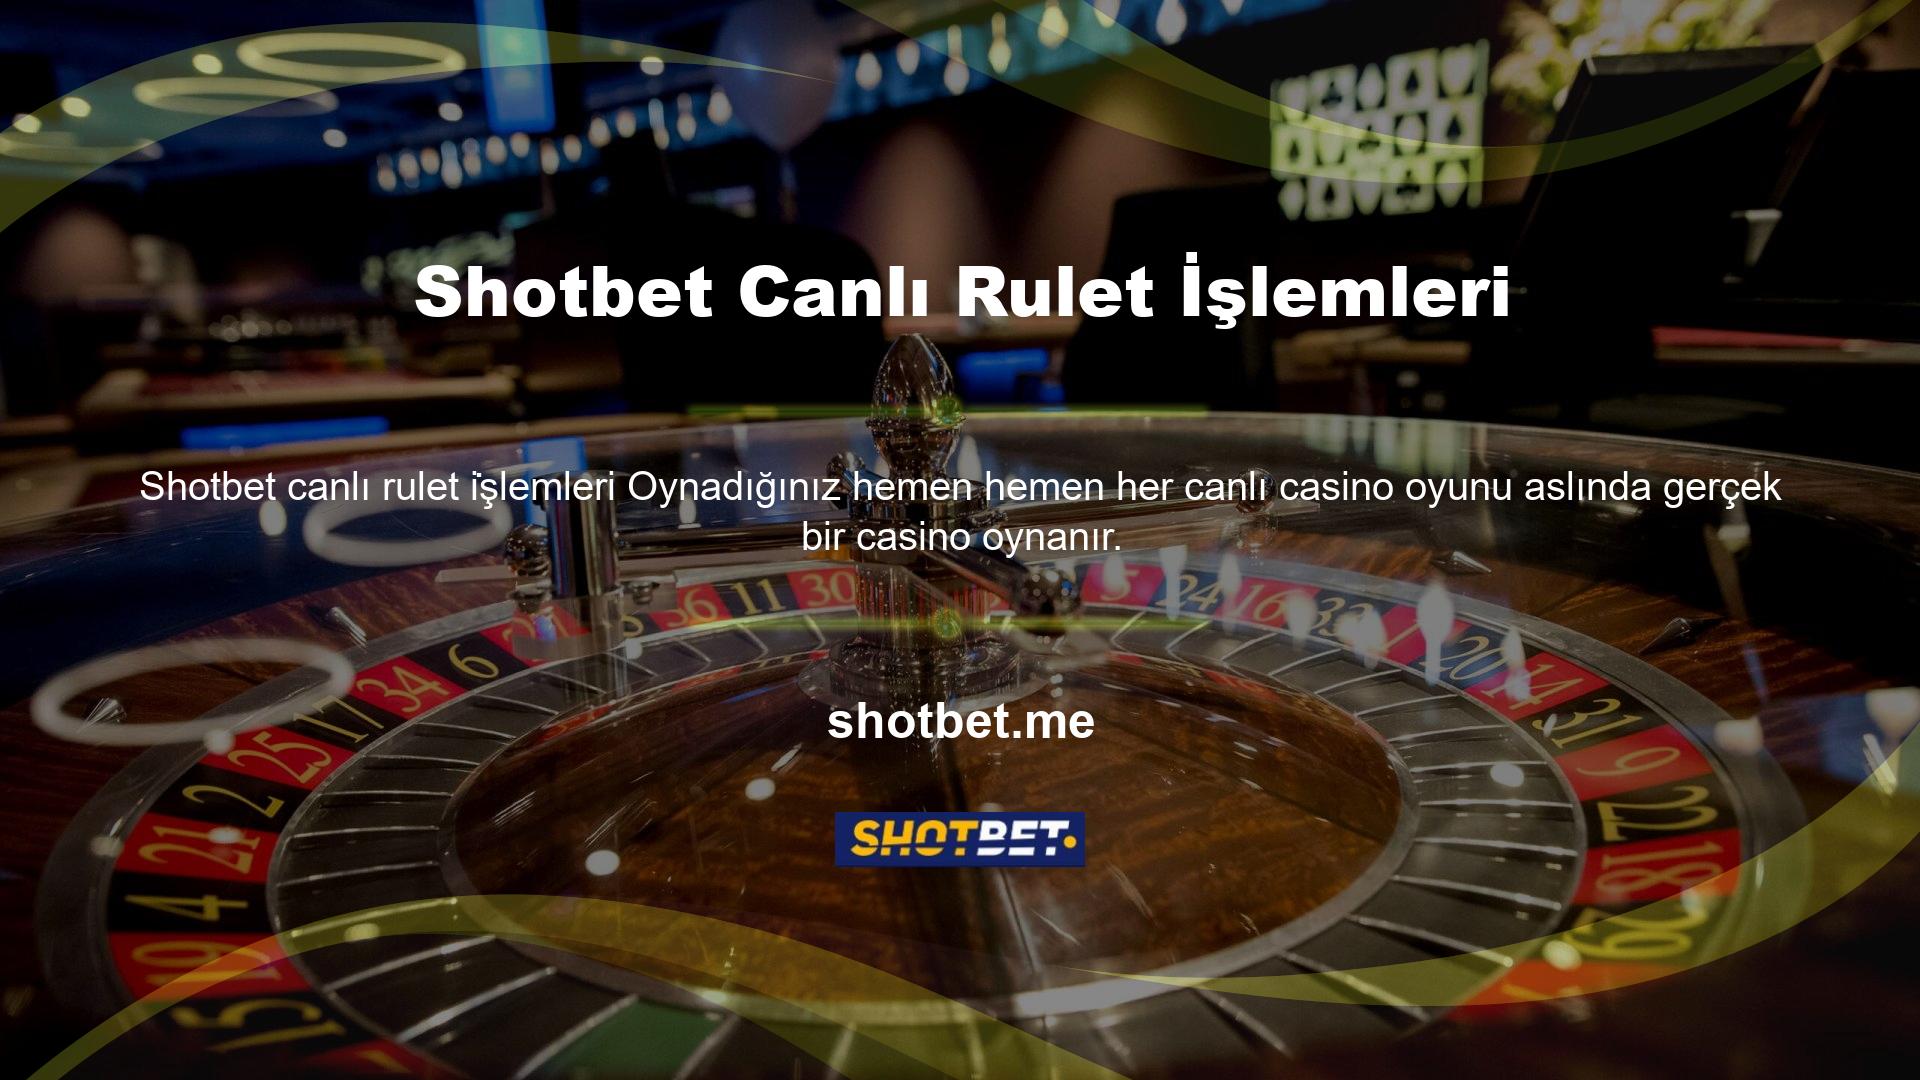 Shotbet canlı rulet oyunları size gerçek casino hissini her zaman, her yerde, 7/24 verir